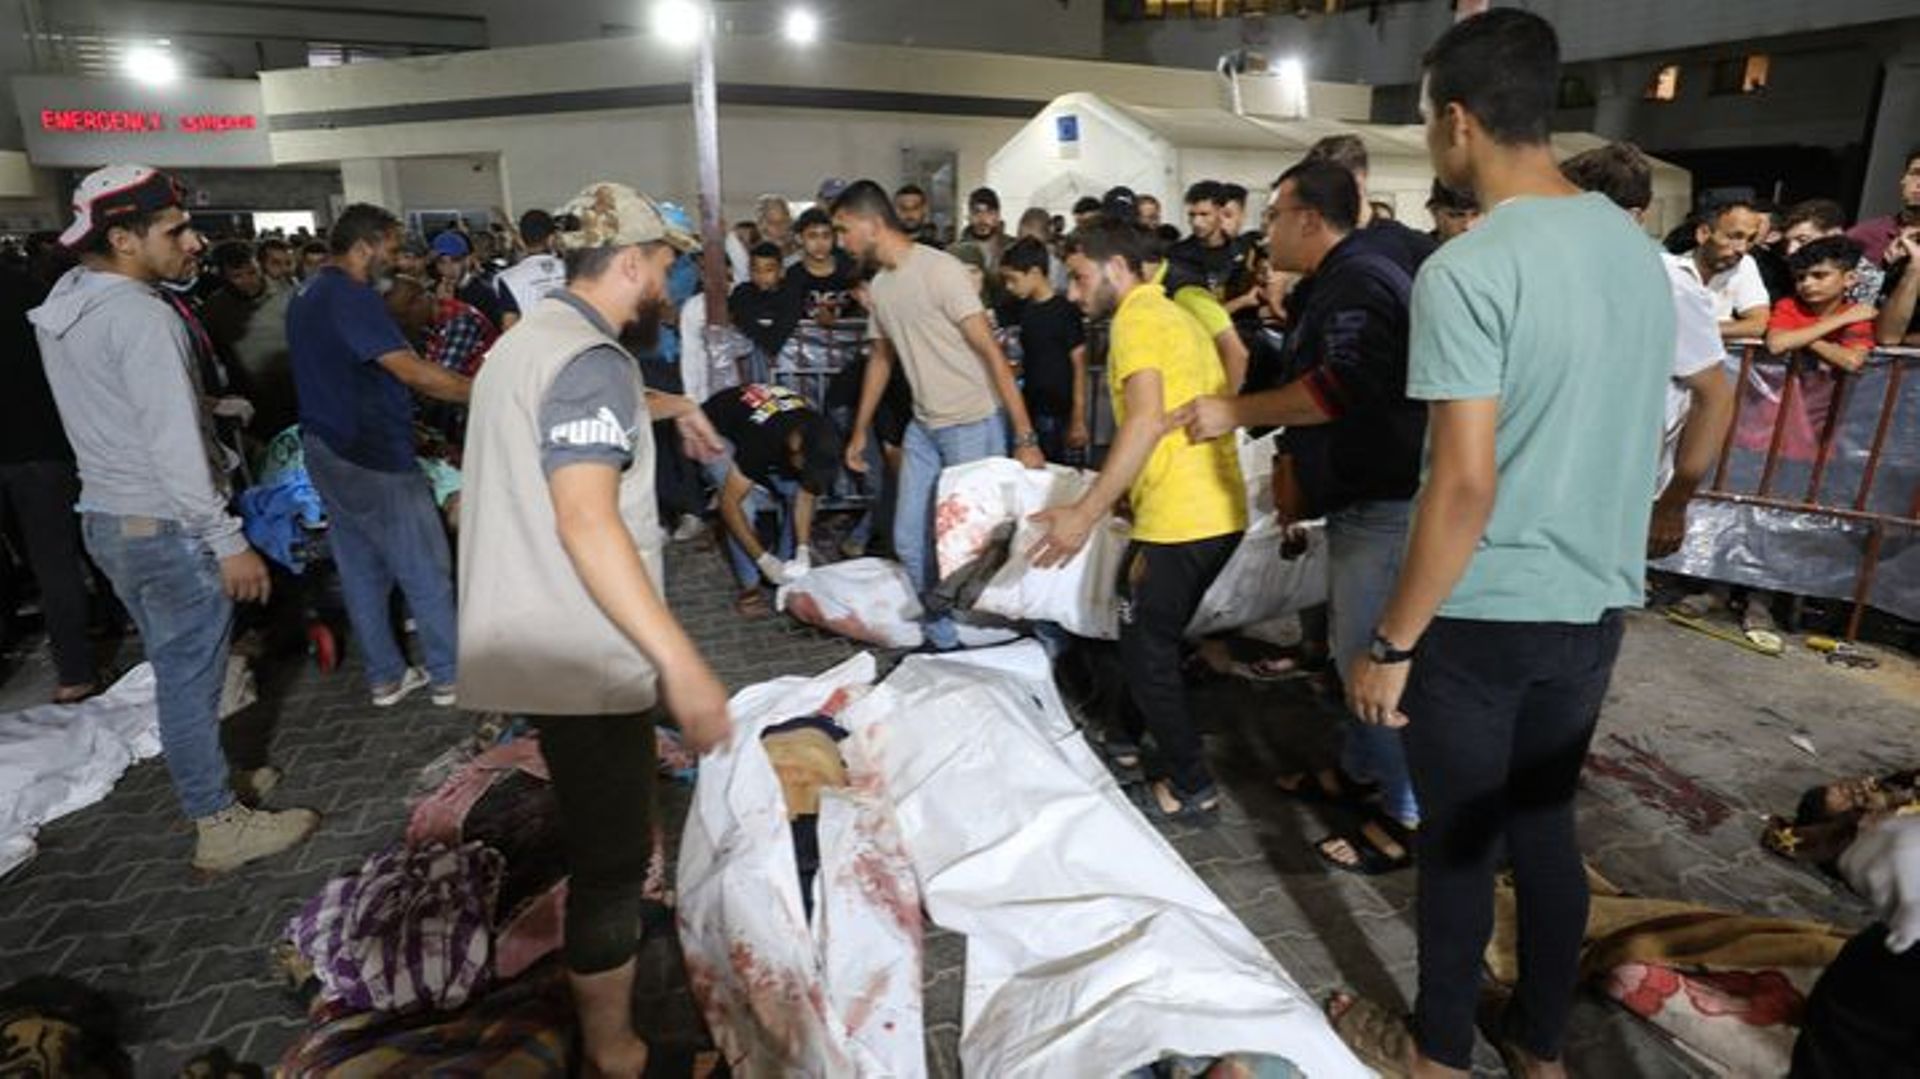 La guerra tra Israele e Gaza: centinaia di morti in un ospedale di Gaza, quello che sappiamo